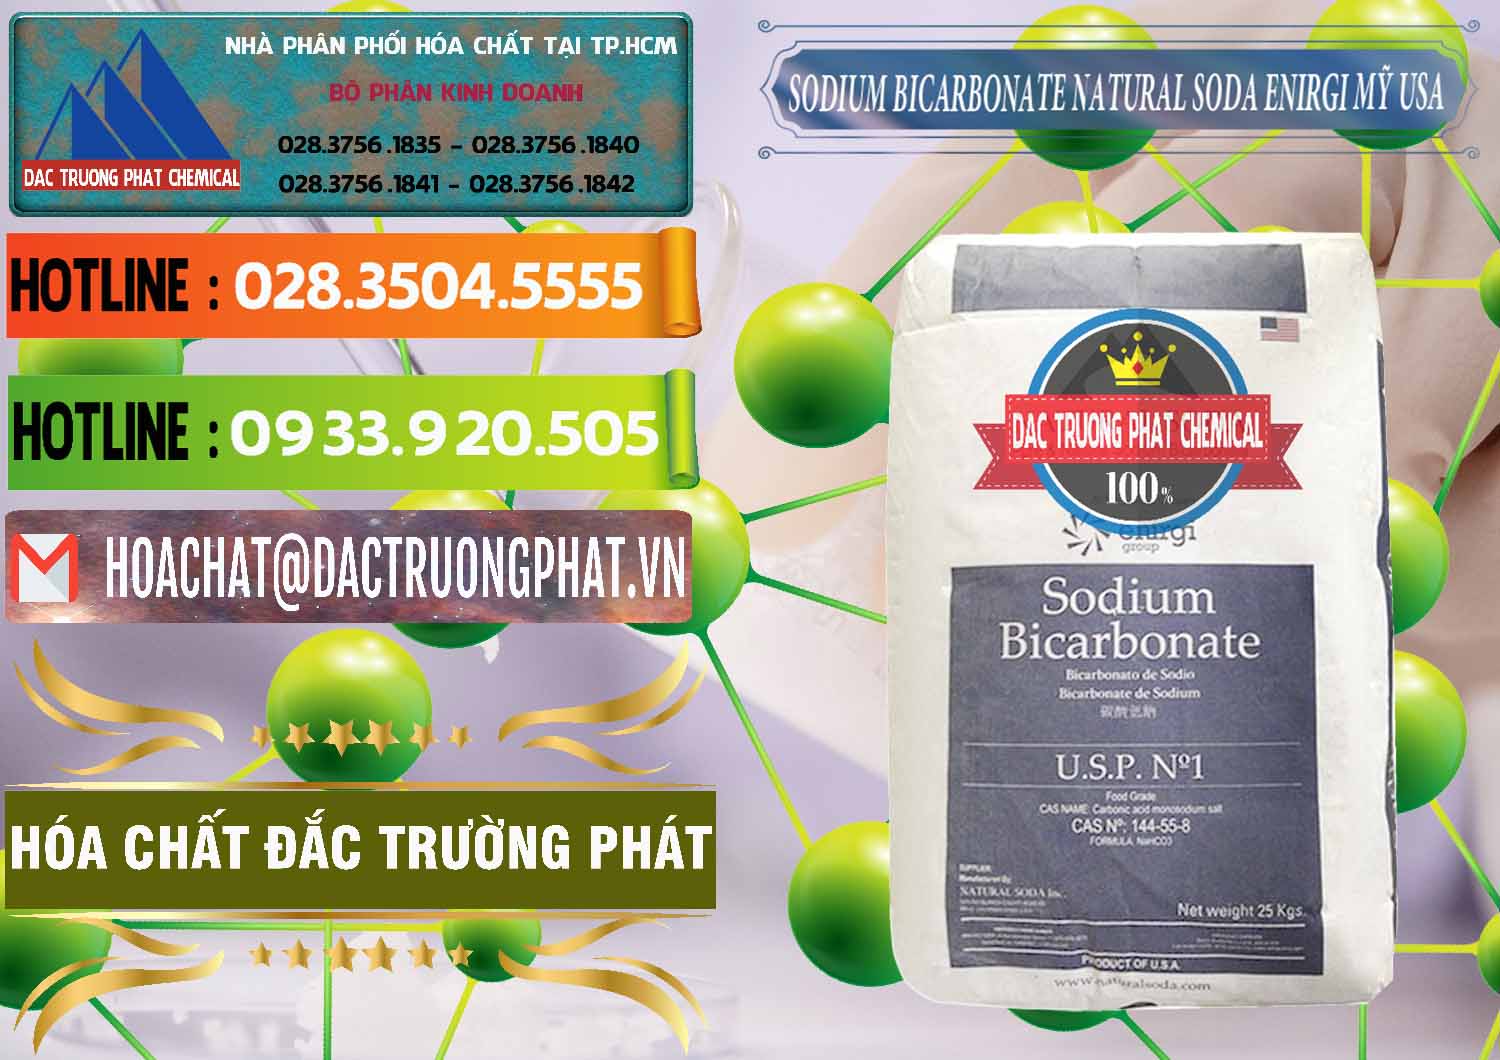 Đơn vị cung cấp ( bán ) Sodium Bicarbonate – Bicar NaHCO3 Food Grade Natural Soda Enirgi Mỹ USA - 0257 - Nơi cung ứng _ phân phối hóa chất tại TP.HCM - cungcaphoachat.com.vn